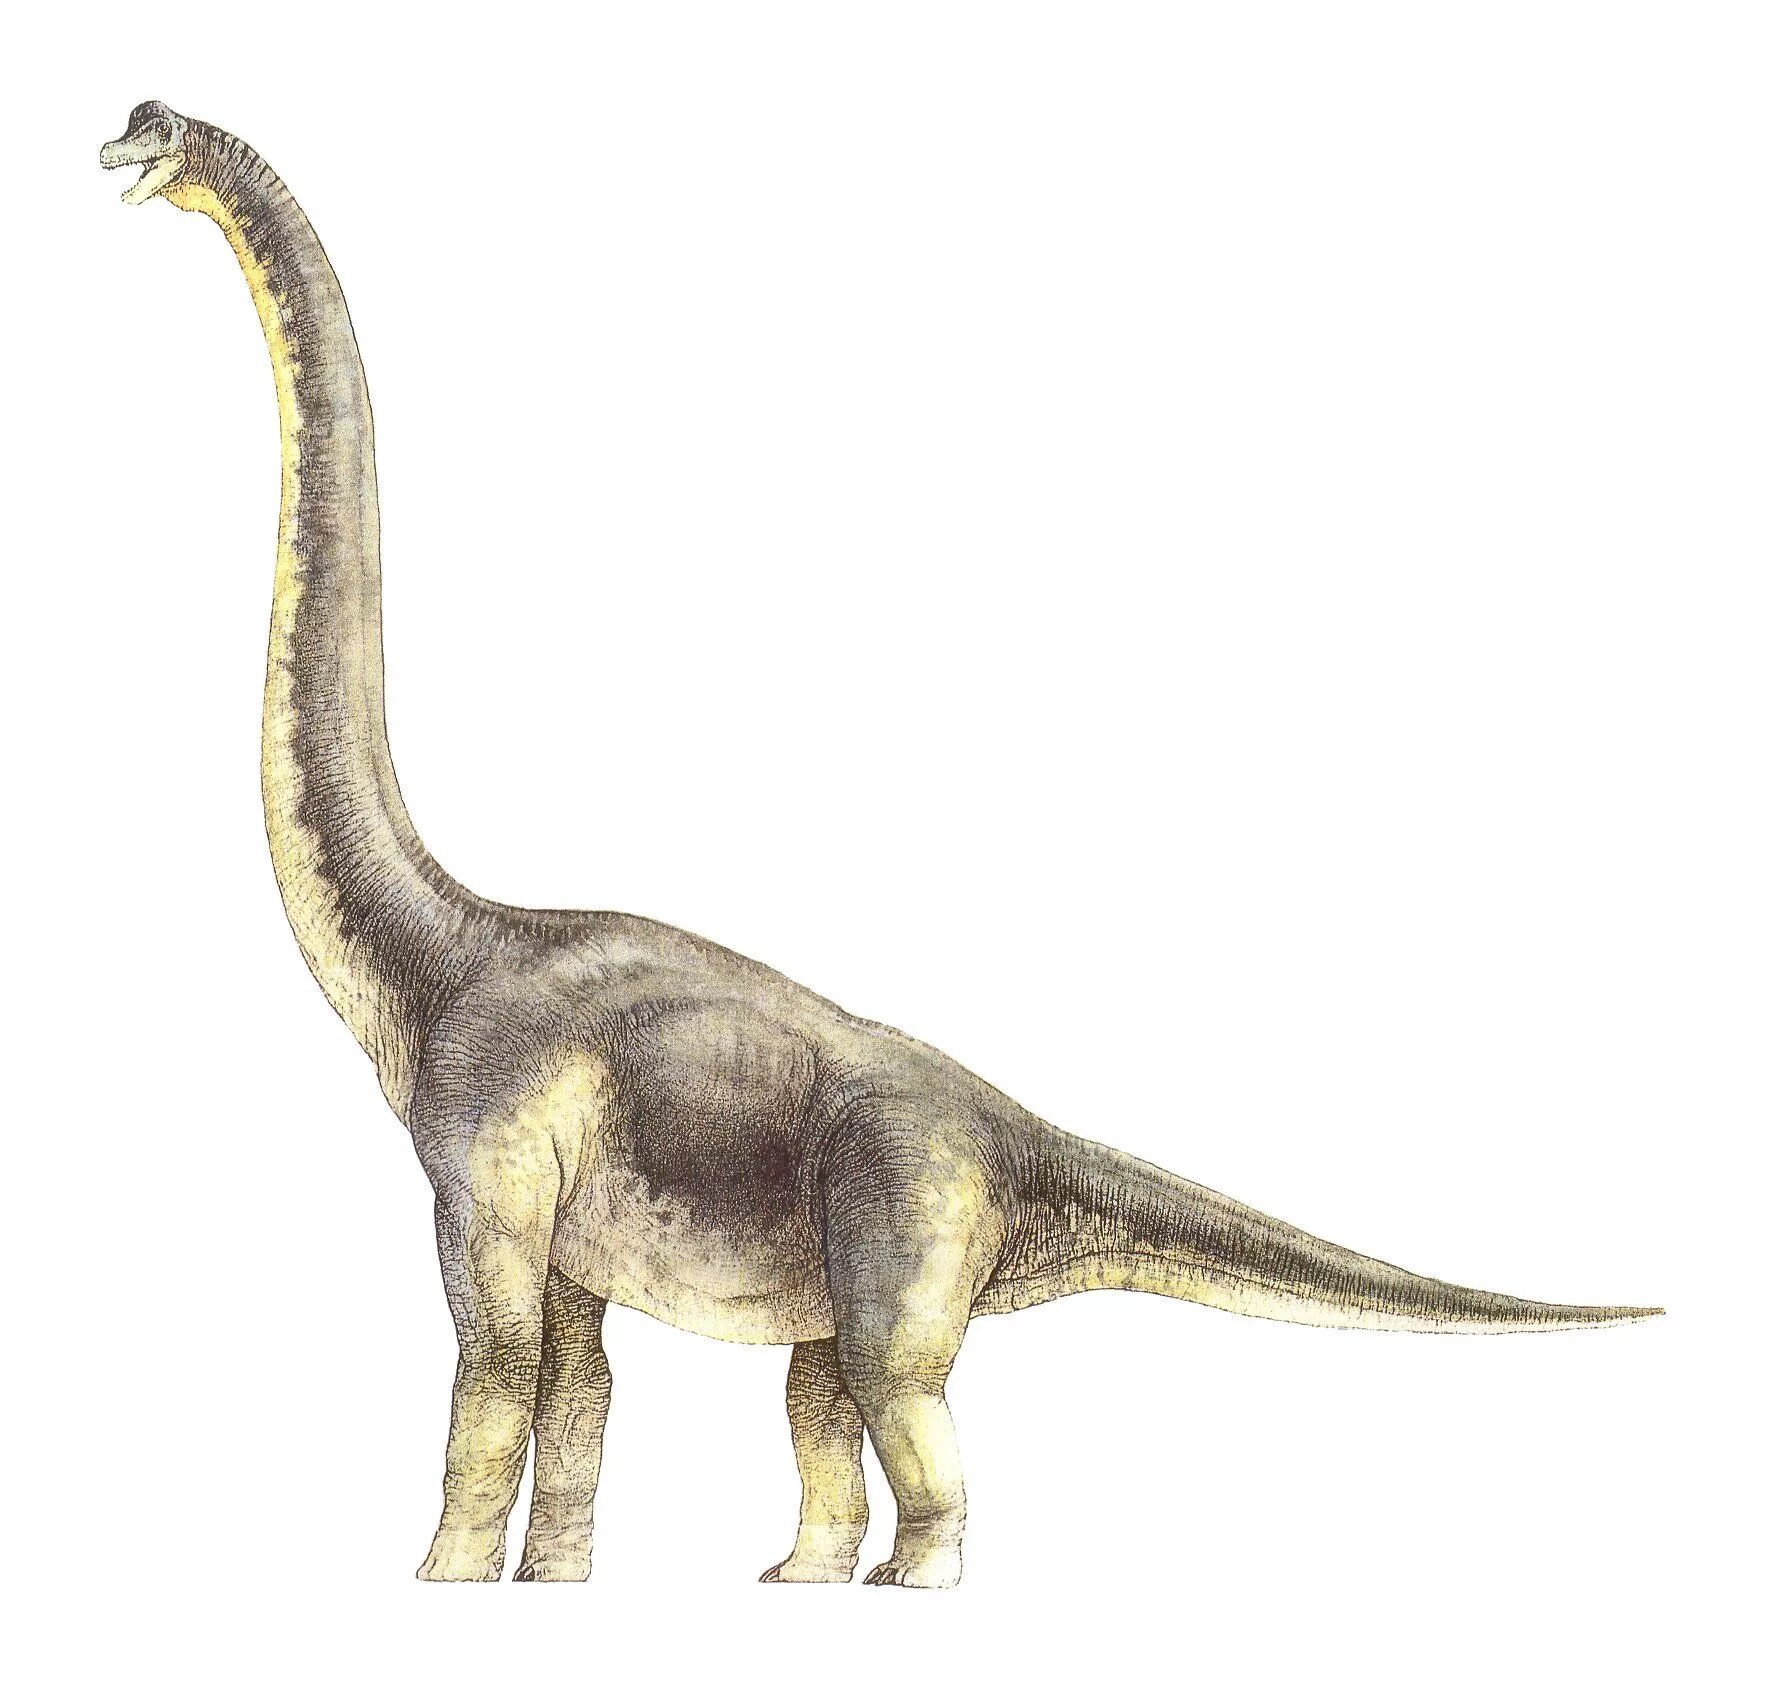 Длинношеий динозавр. Брахиозавр парк Юрского периода. Зауропод и Диплодок. Парк Юрского периода 1993 Брахиозавр. Диплодок Диплодок.